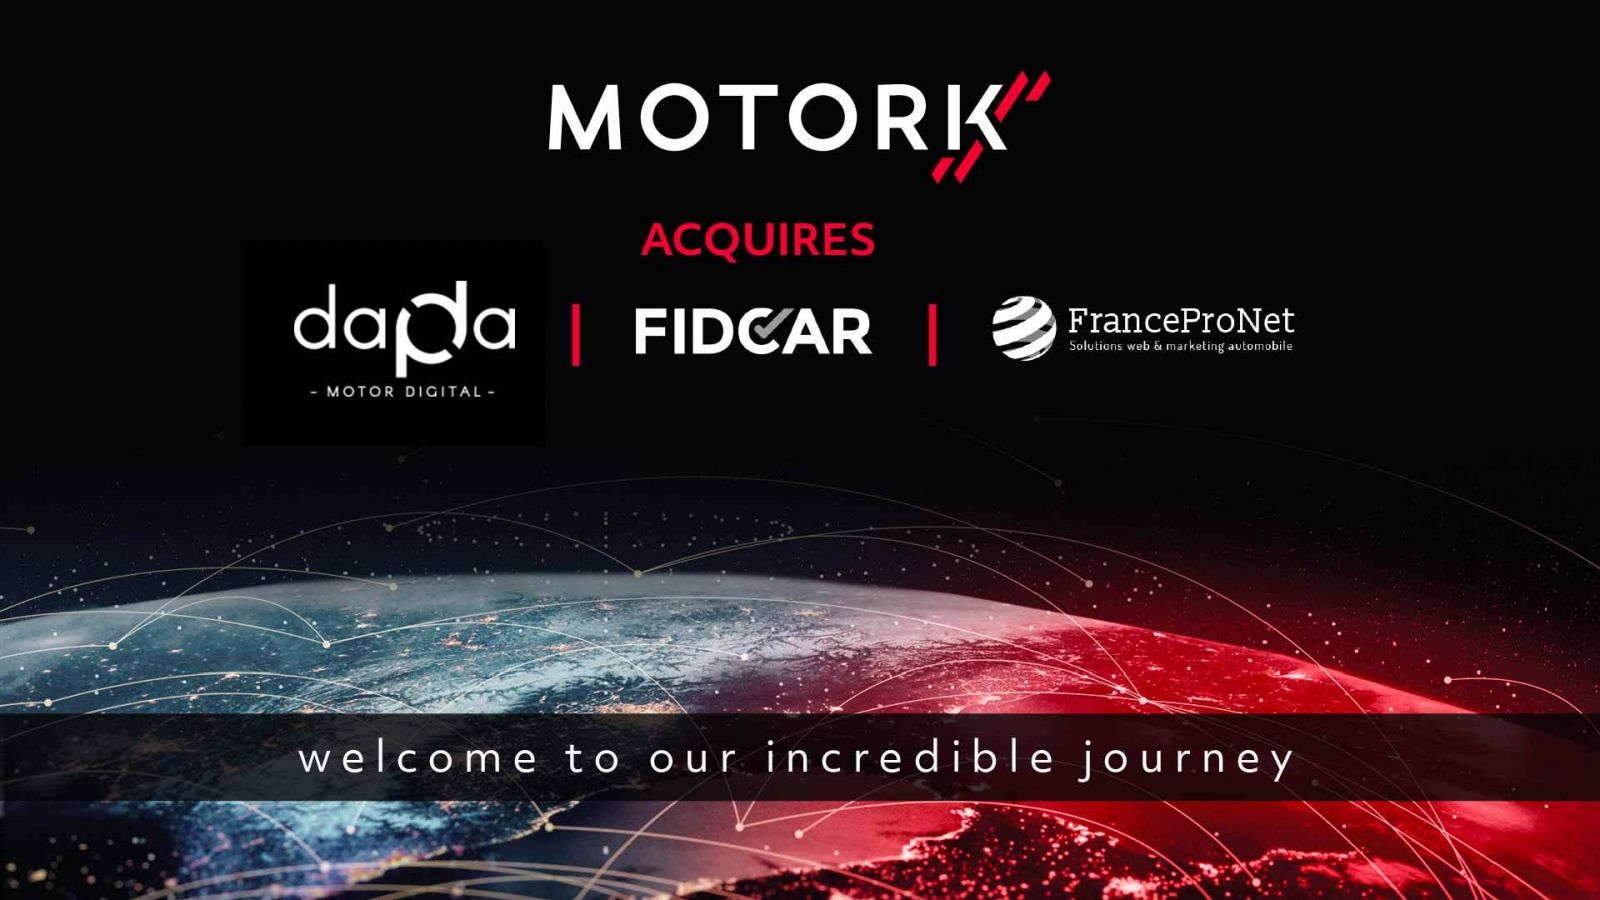 MotorK consolida la sua posizione di azienda nell'area EMEA  per le attività di sales e marketing nel settore auto: comprate Dapda, Fidcar e FranceProNet